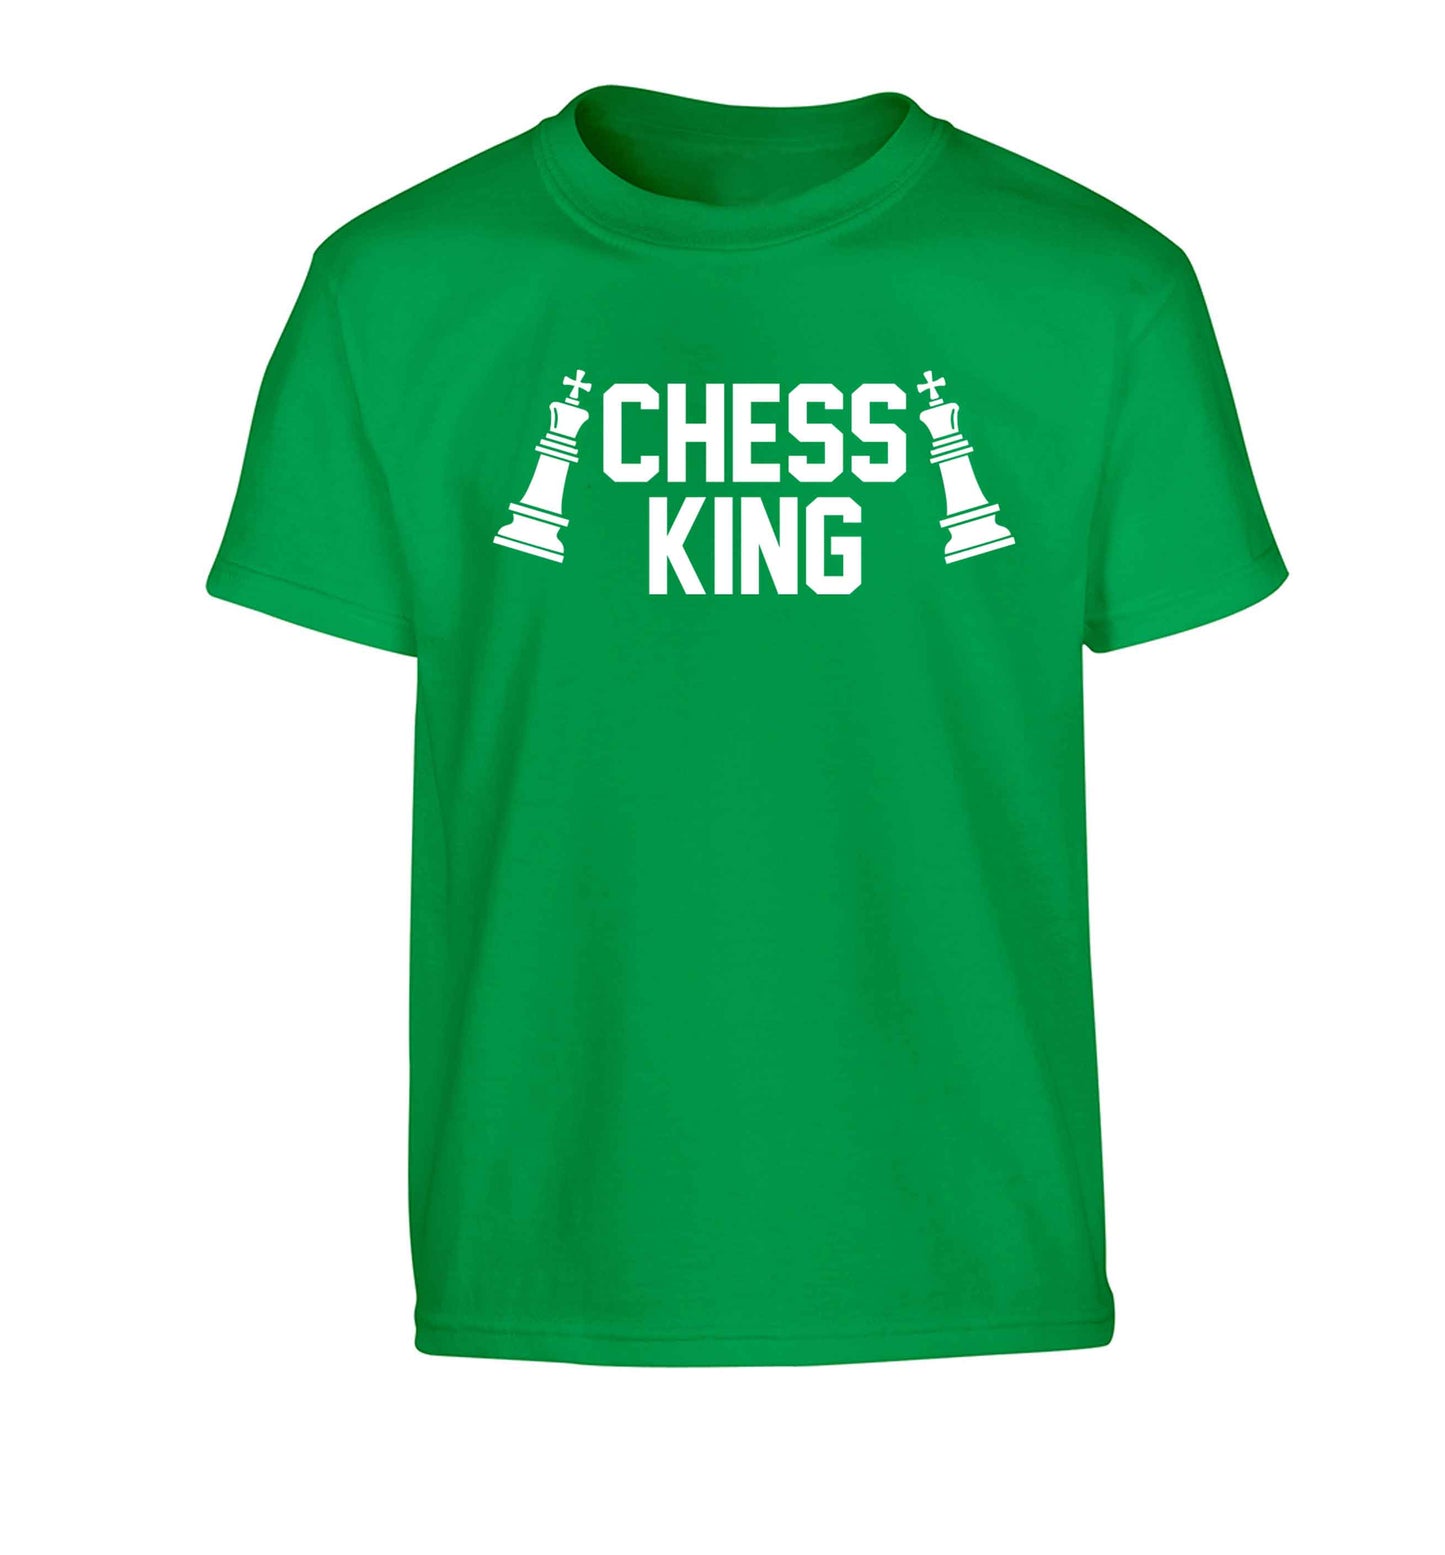 Chess king Children's green Tshirt 12-13 Years